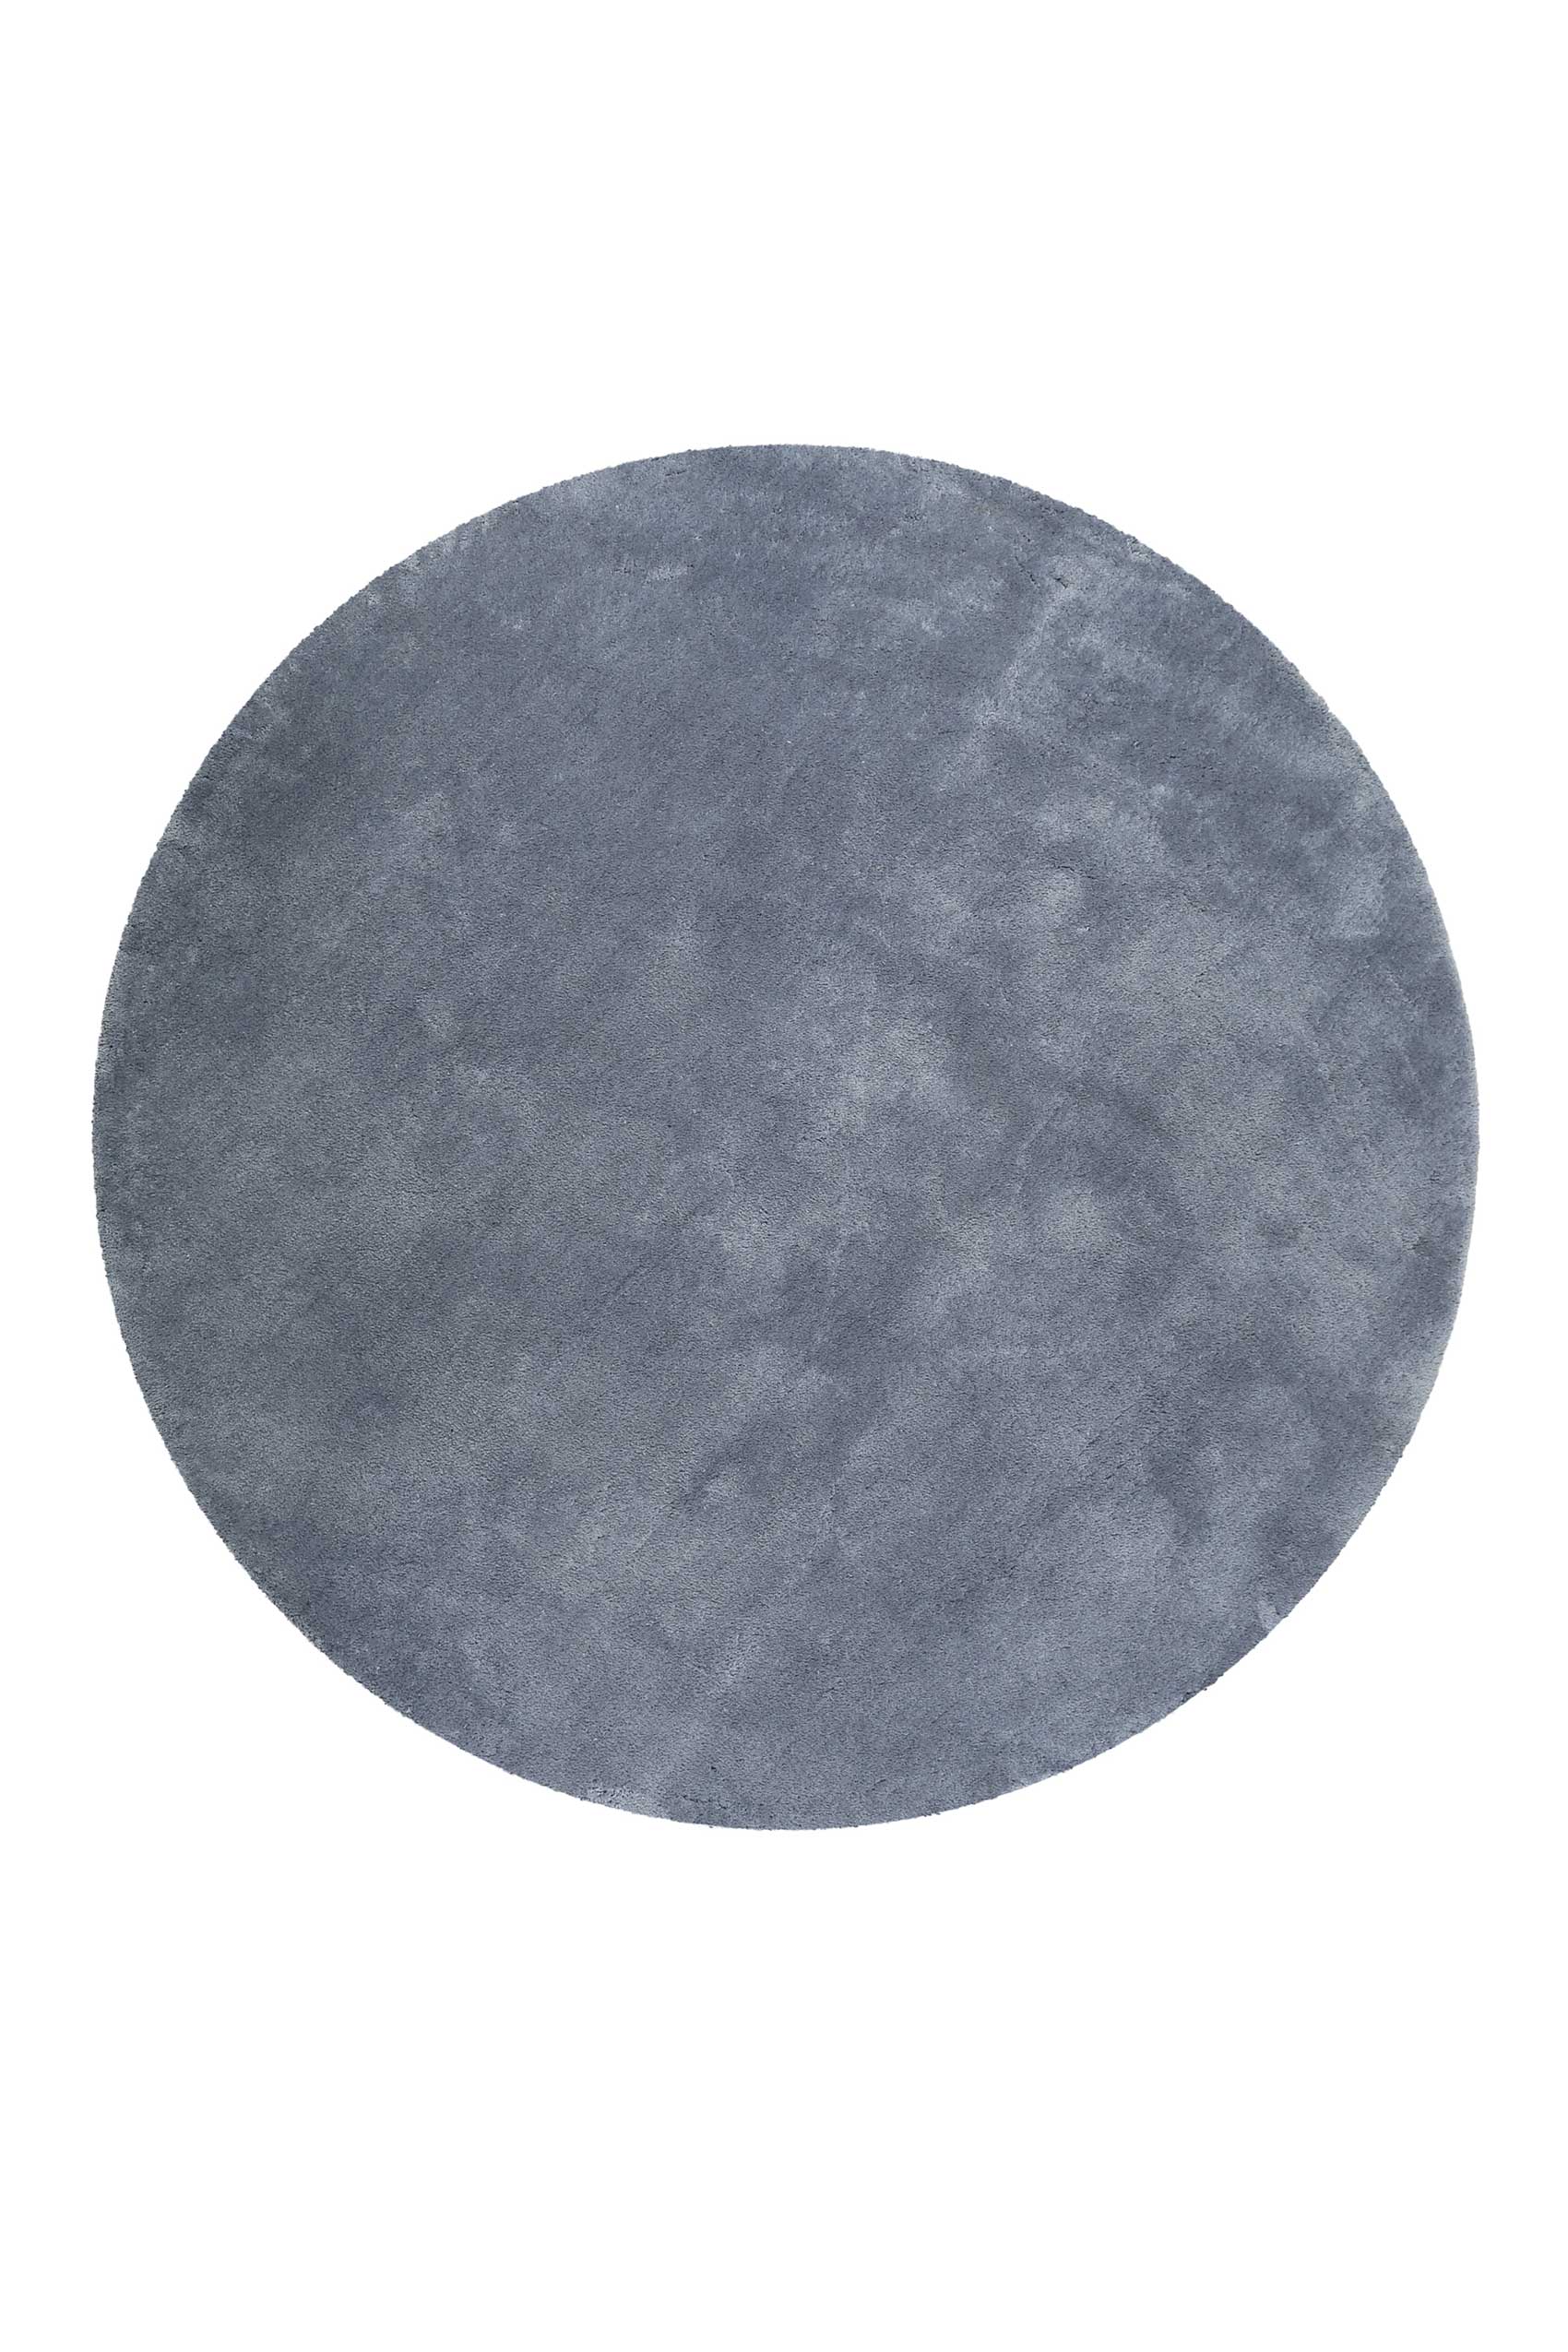 Esprit Teppich Rund Blau Grau Hochflor » Relaxx « - Ansicht 1